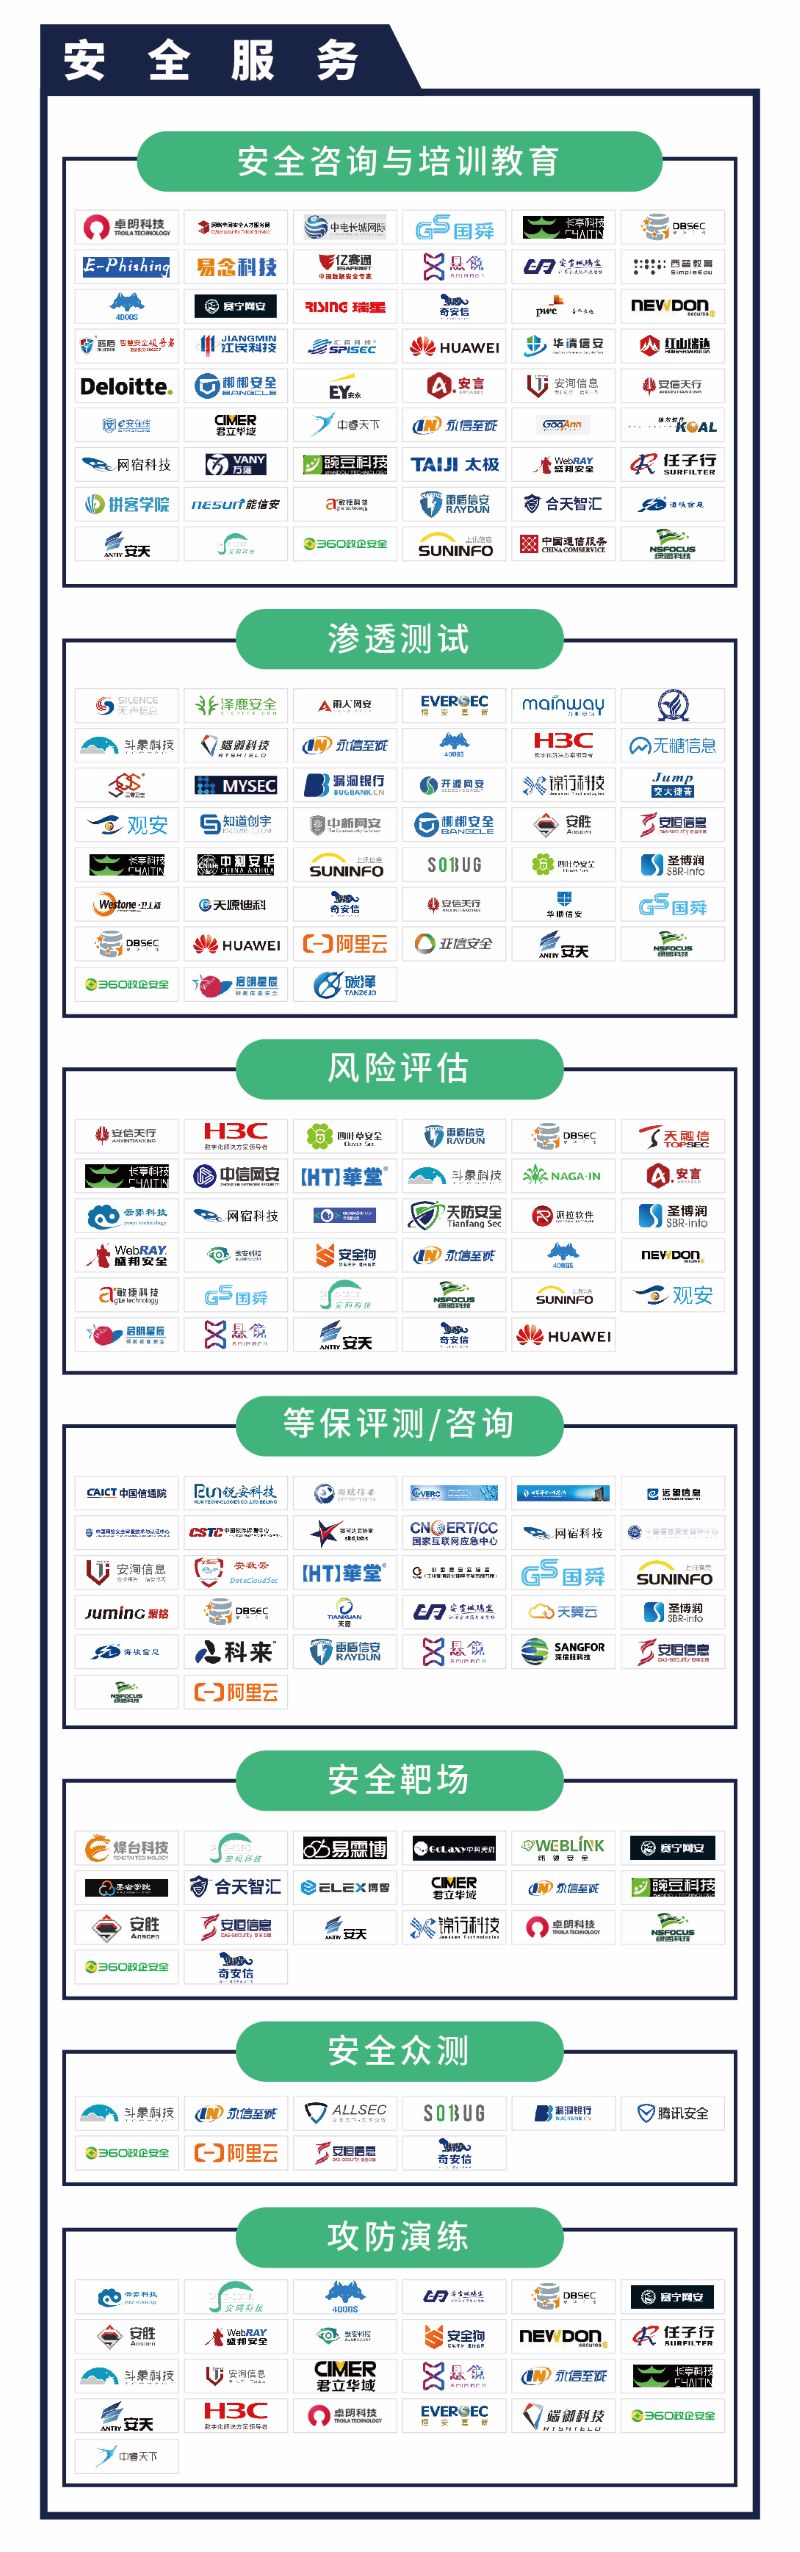 《CCSIP 2020中国网络安全产业全景图》正式发布 | FreeBuf咨询-第17张图片-网盾网络安全培训